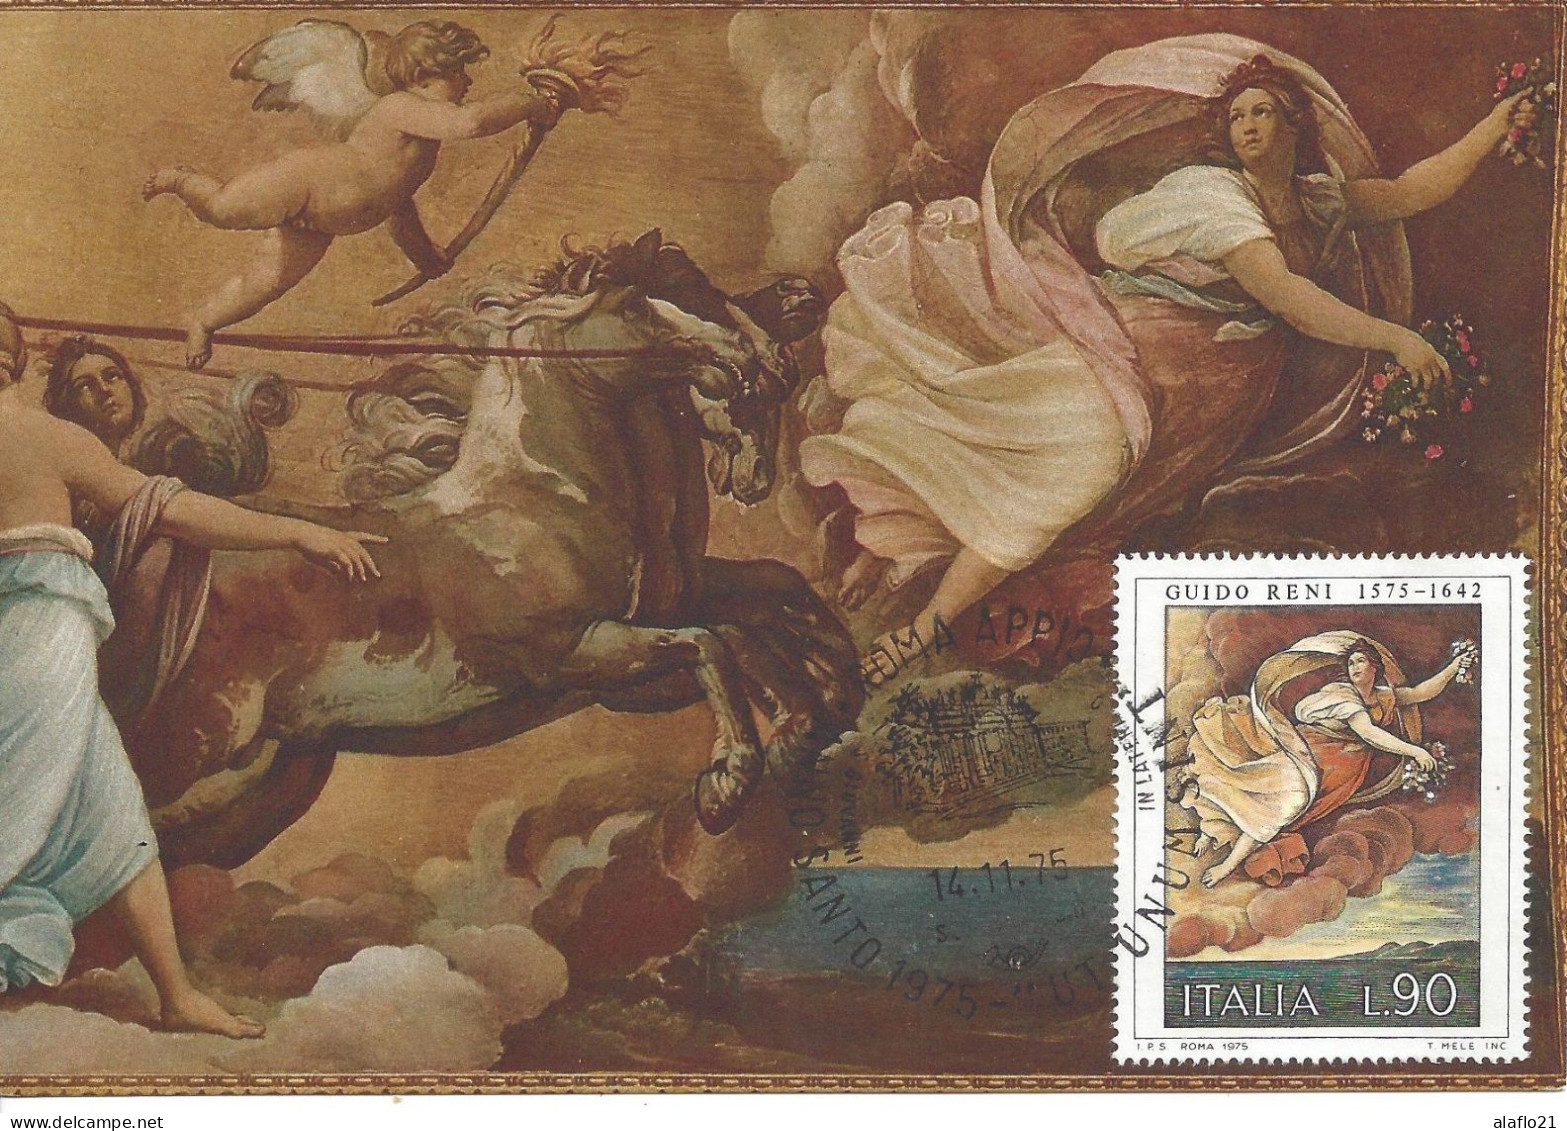 ITALIE - CARTE MAXIMUM - Yvert N° 1229 - L'AURORE - OEUVRE De GUIDO RENI - Cartes-Maximum (CM)